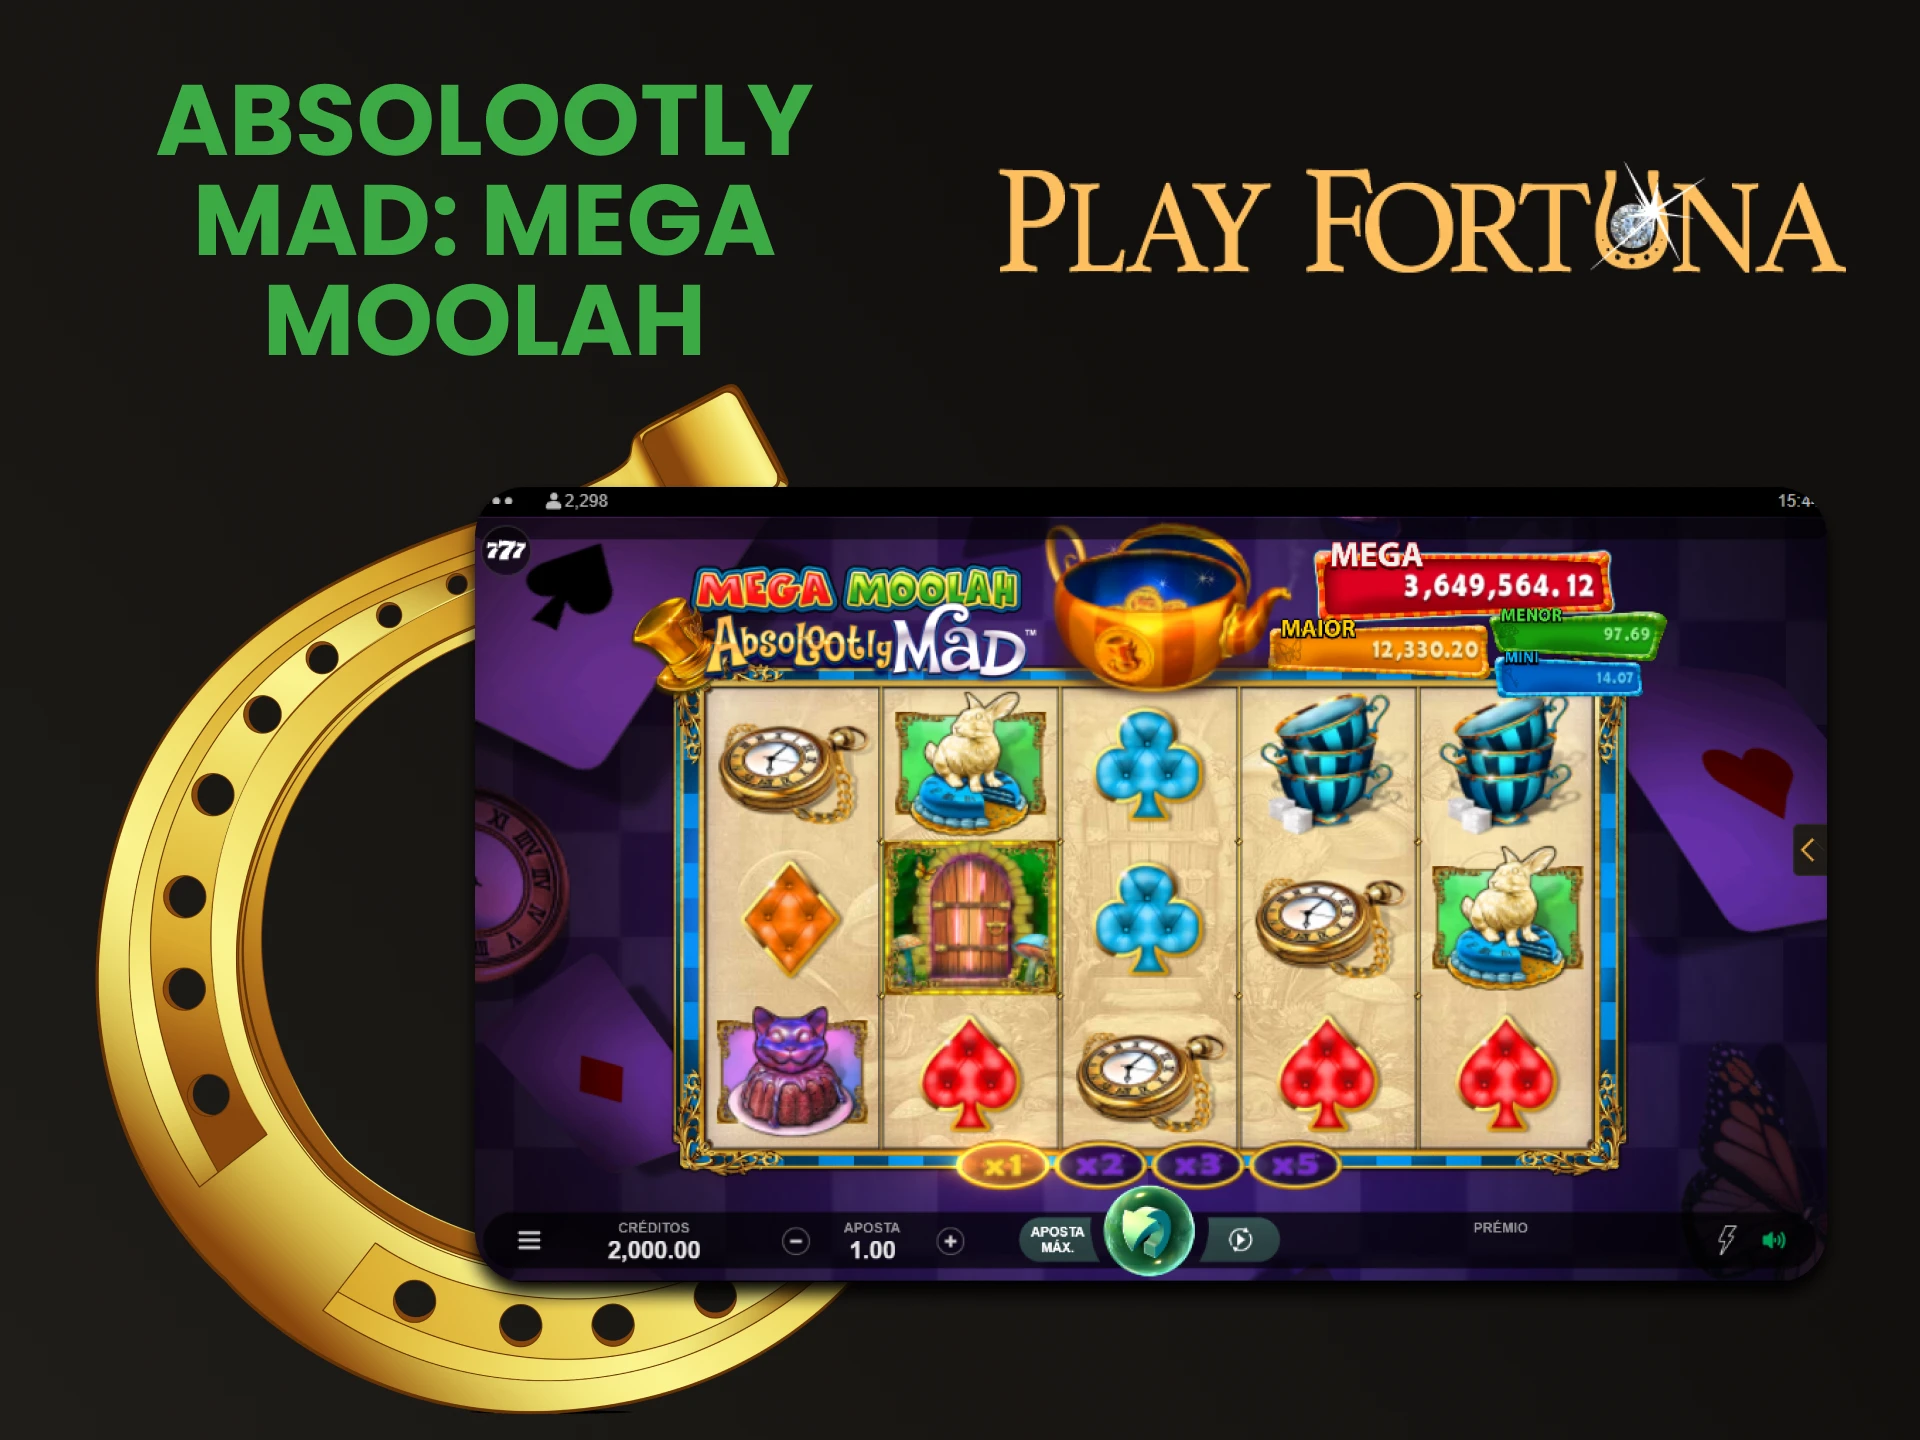 Jogue Absolootly Mad na seção de jackpot do Play Fortuna.